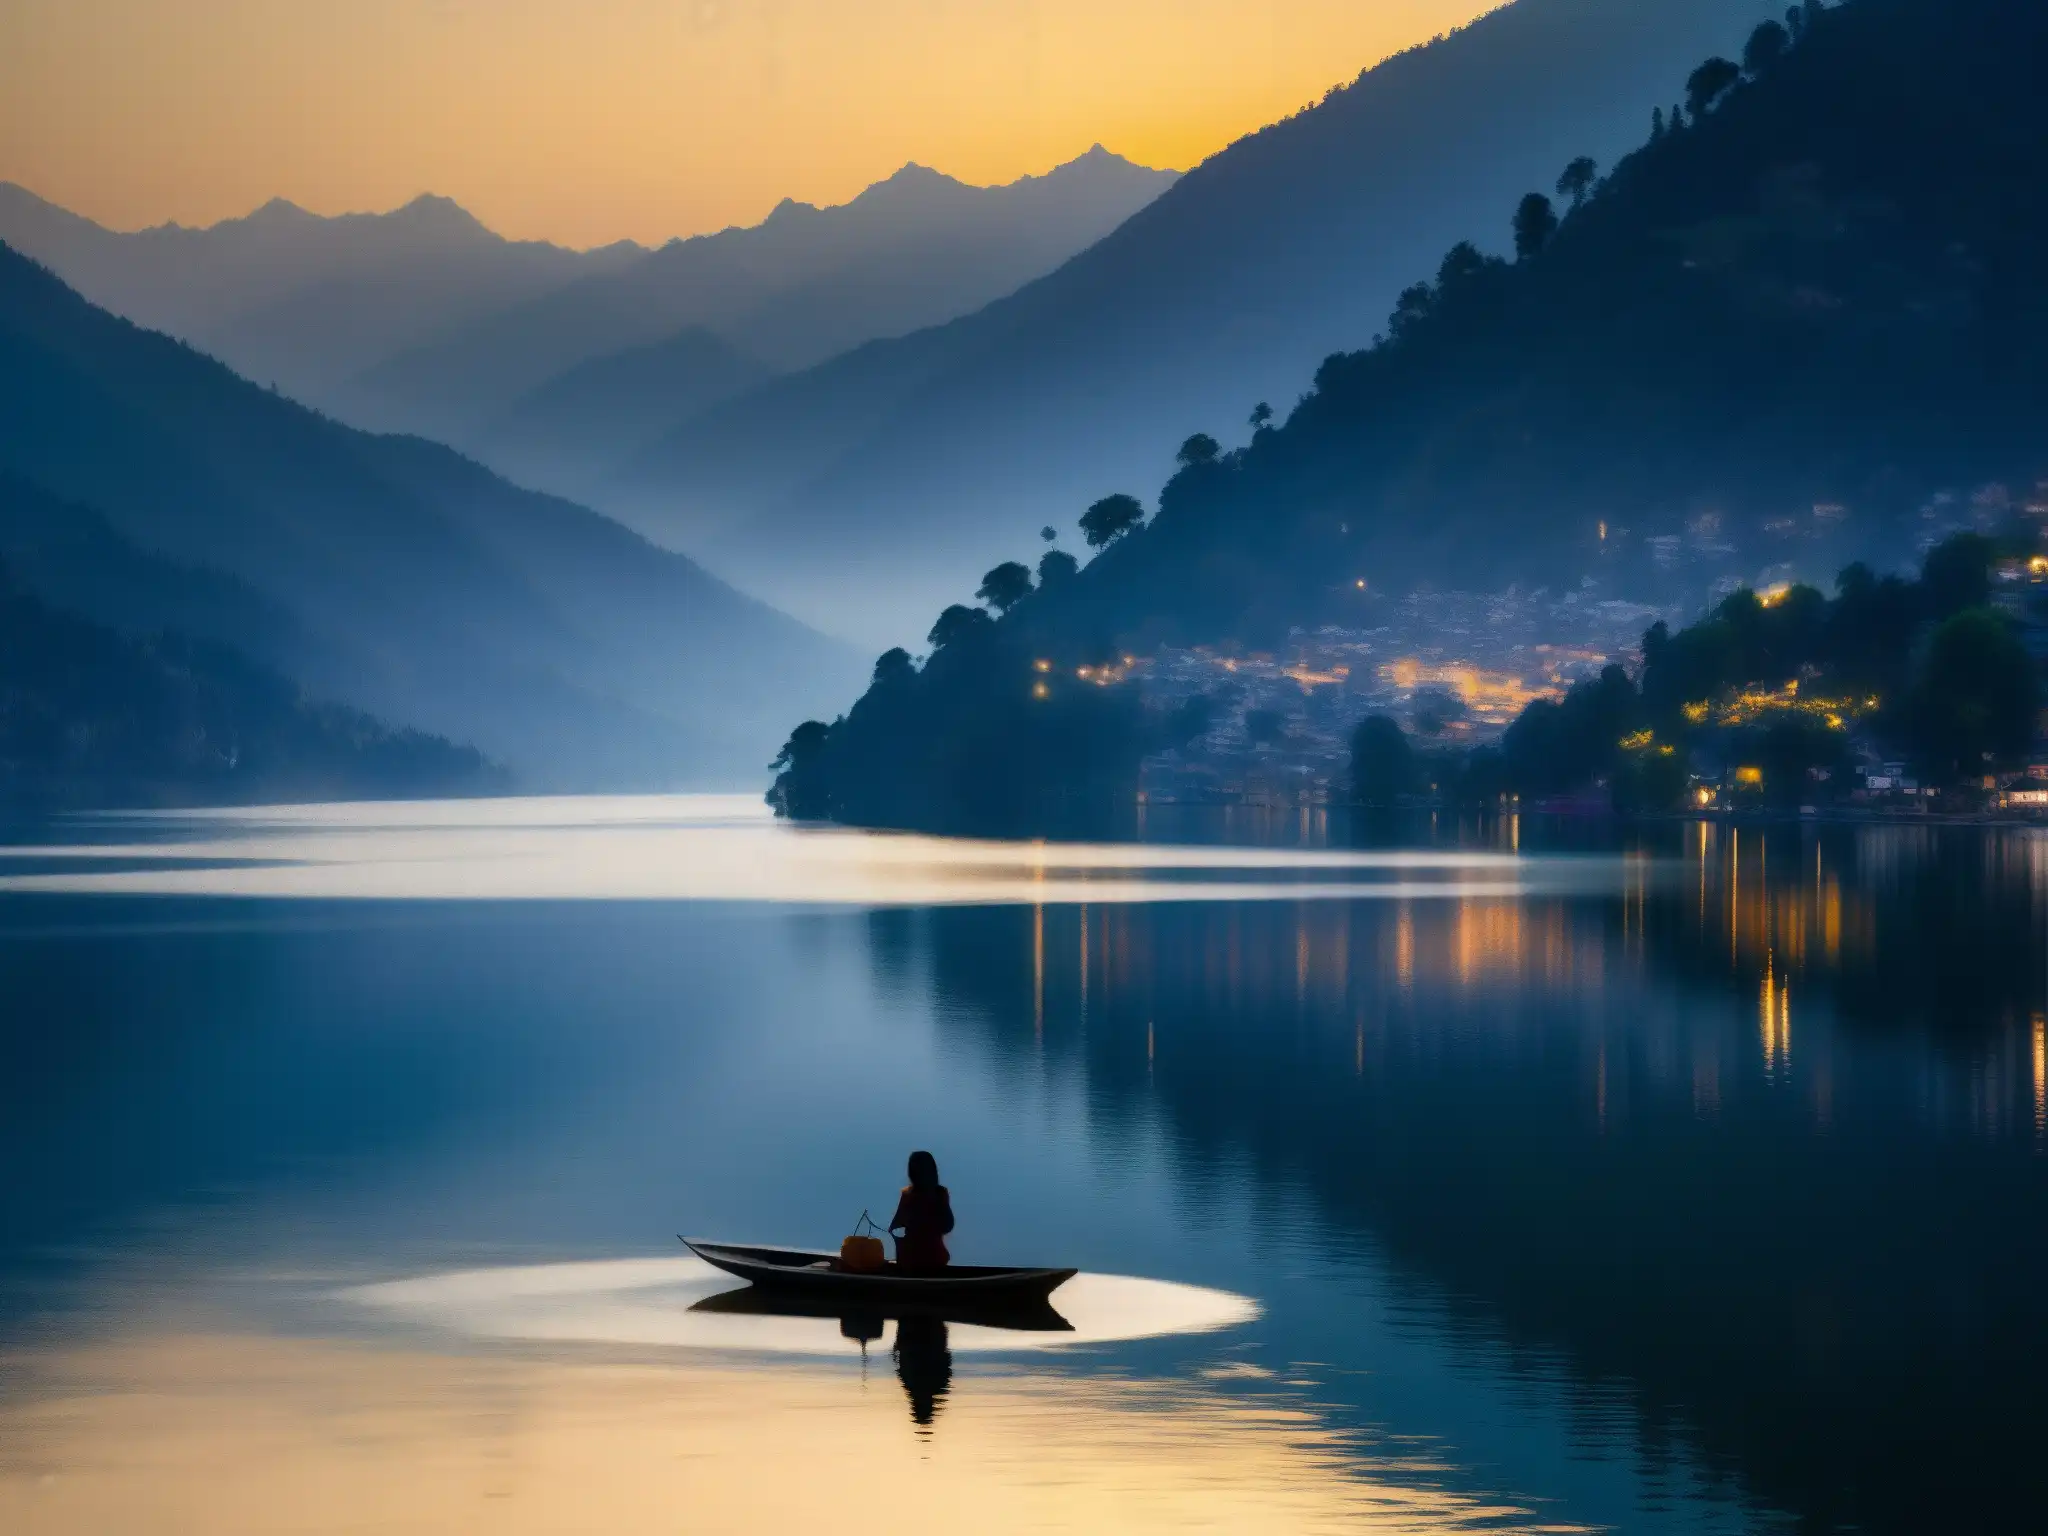 Misterio y encanto en el lago Nainital al atardecer, con la silueta de una dama en la orilla y los misteriosos reflejos de las montañas